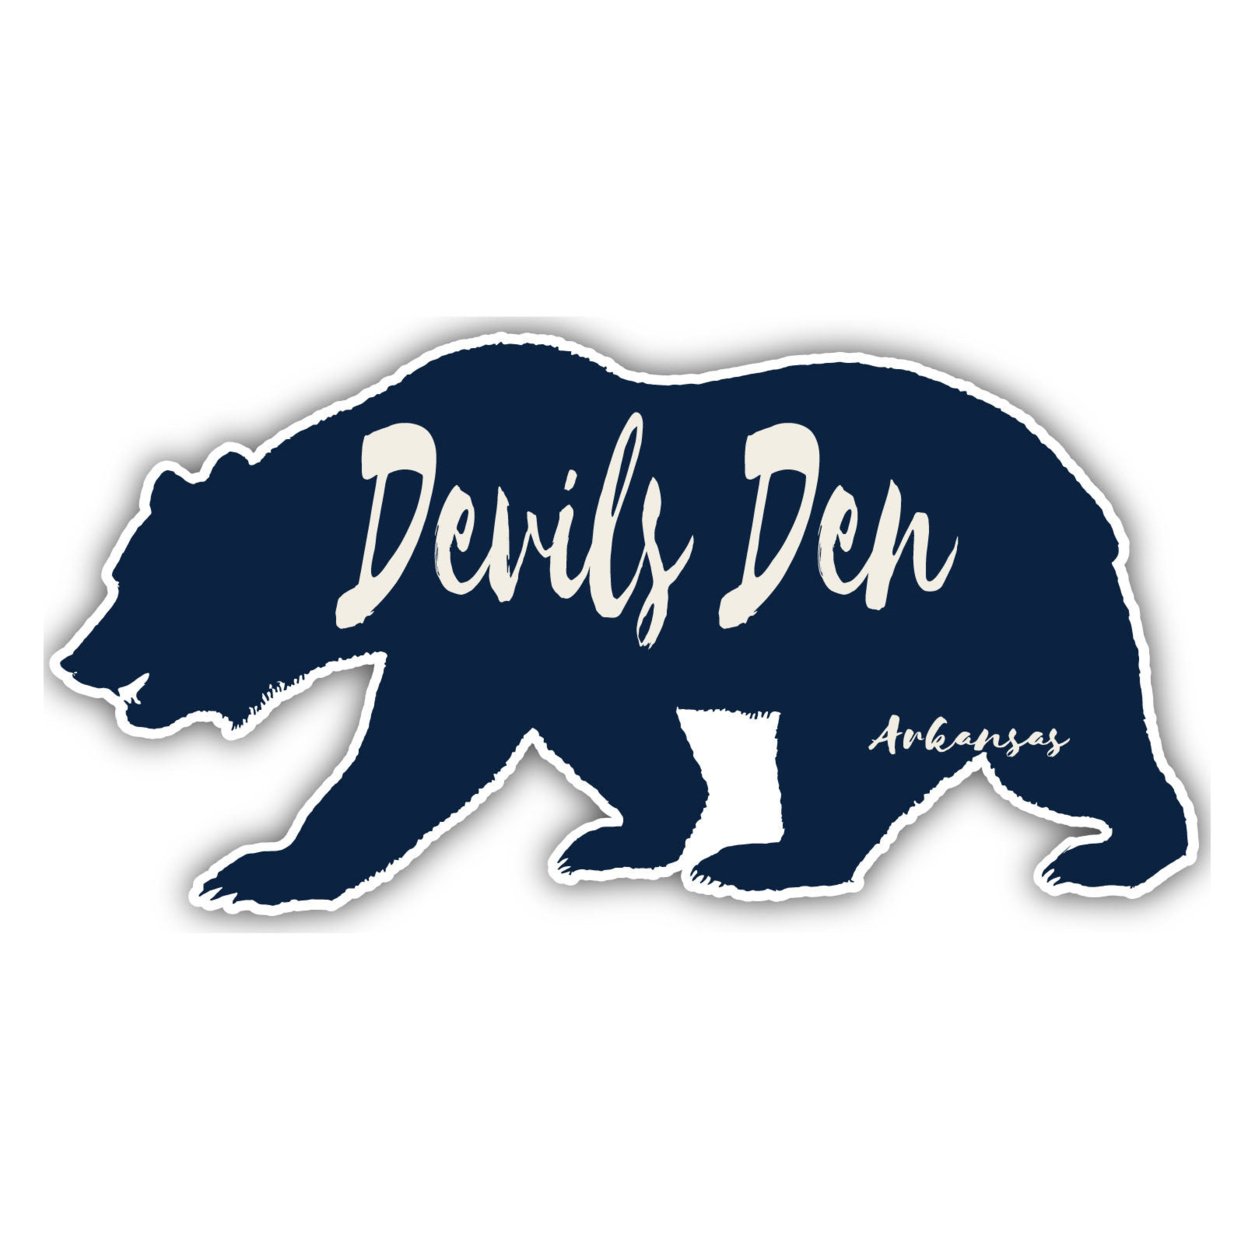 Devils Den Arkansas Souvenir Decorative Stickers (Choose Theme And Size) - Single Unit, 10-Inch, Bear